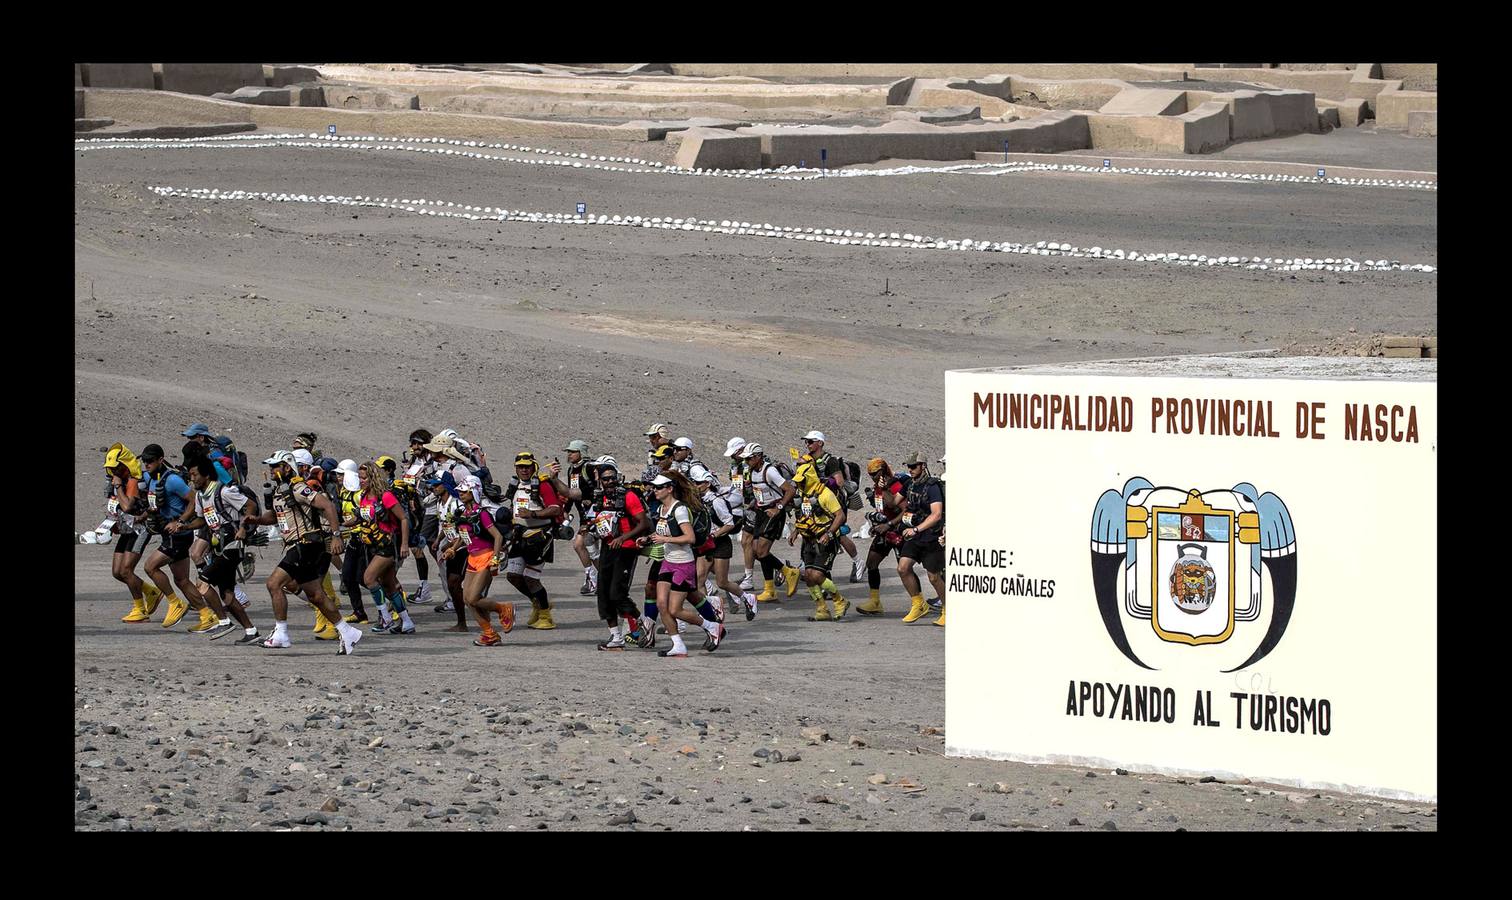 Los competidores del la carrera «más peligrosa del mundo» tienen que lidiar con el clima desértico, tormentas de arena y desniveles de hasta 300 metros. Los atletas recorren 250 km entre las dunas de Nazca y Paracas en seis etapas, del 28 de noviembre al 4 de diciembre.